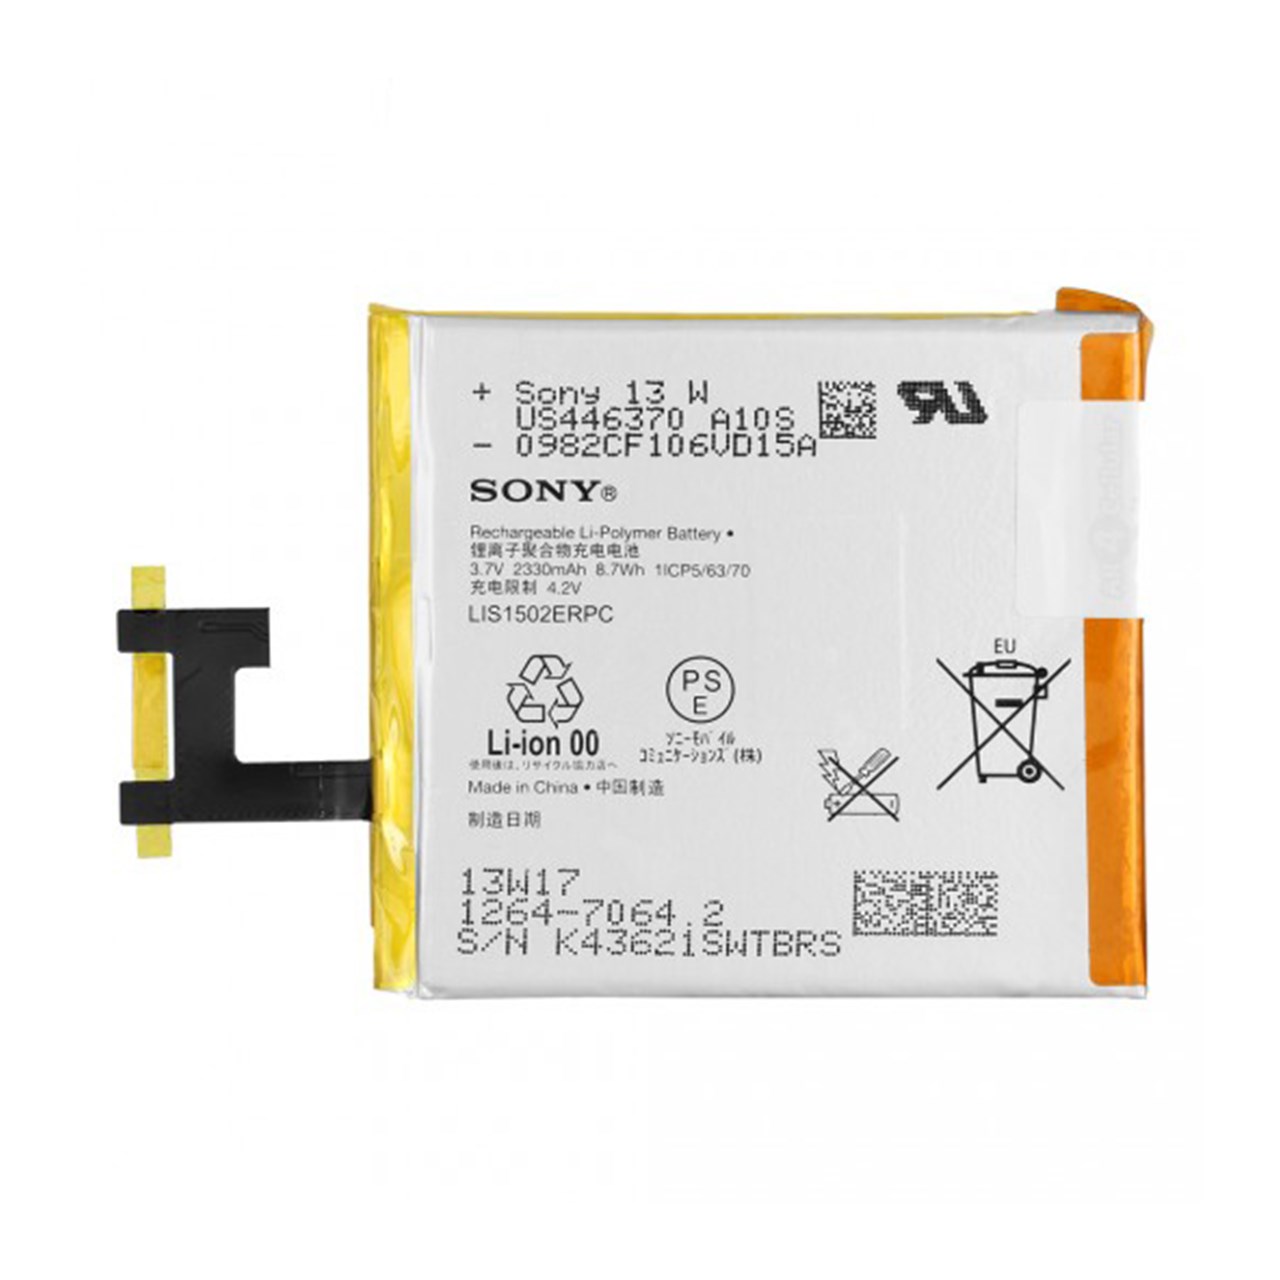 باتری مدل LIS1502ERPC مناسب برای گوشی سونی Xperia Z